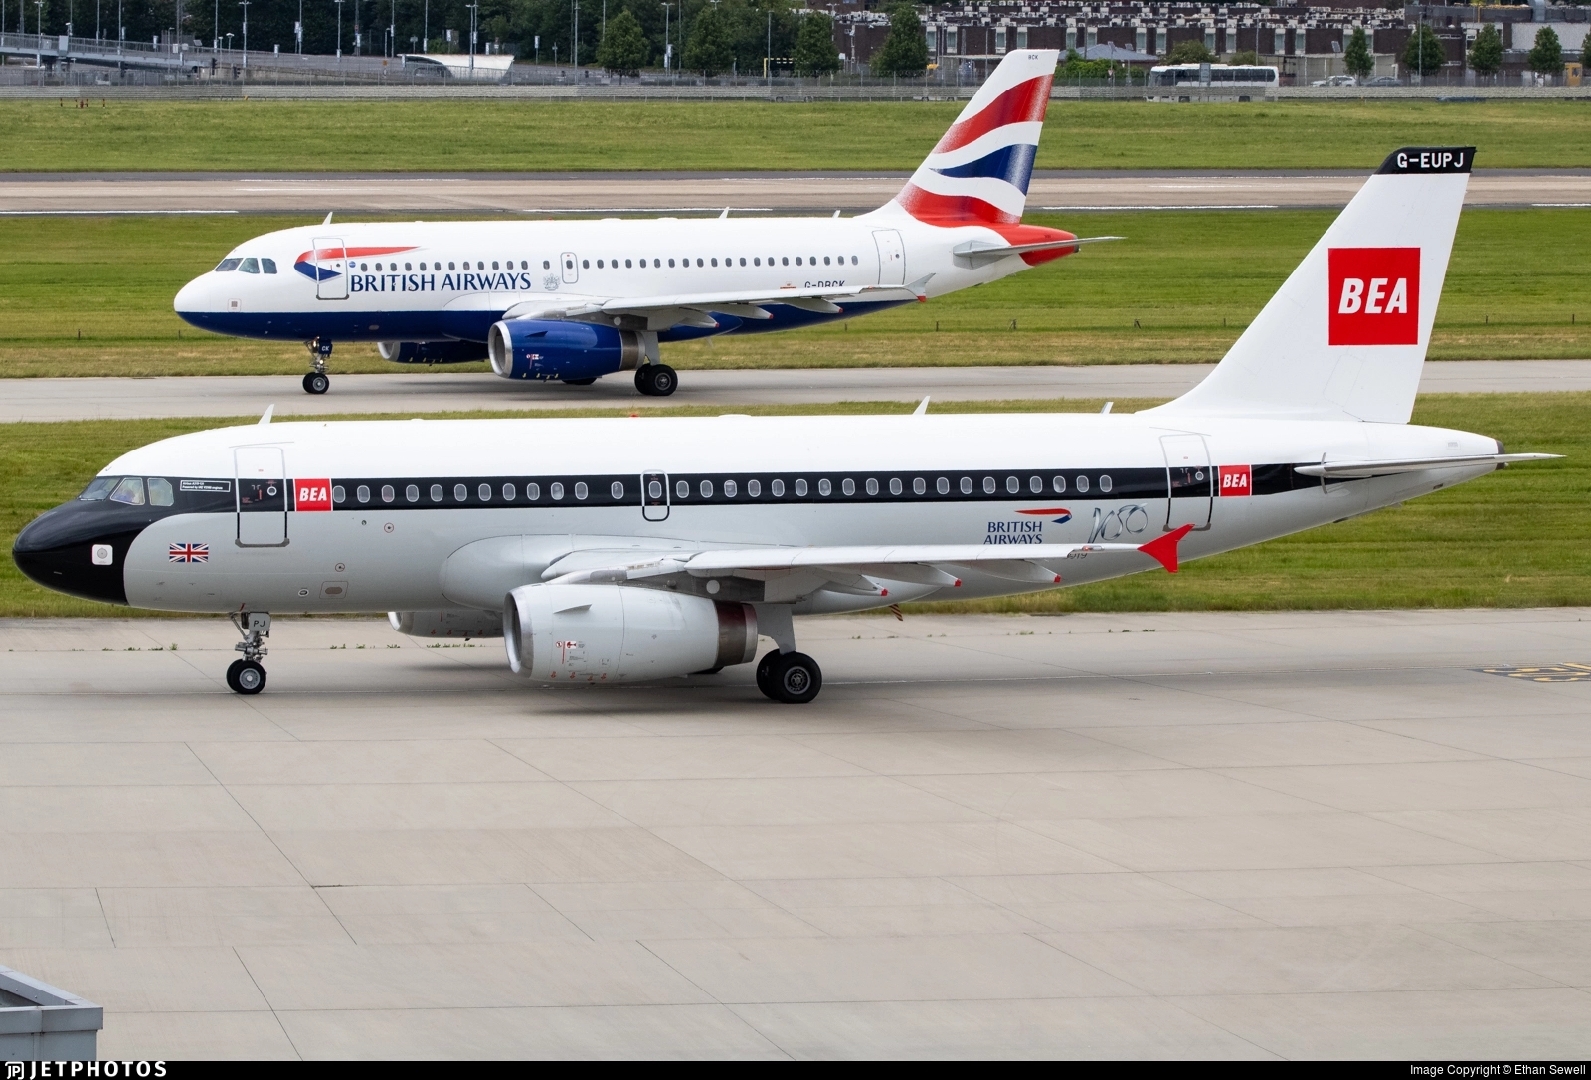 英国航空百年纪念涂装(英欧航)和标准涂装的空客a319同框(图转j网)